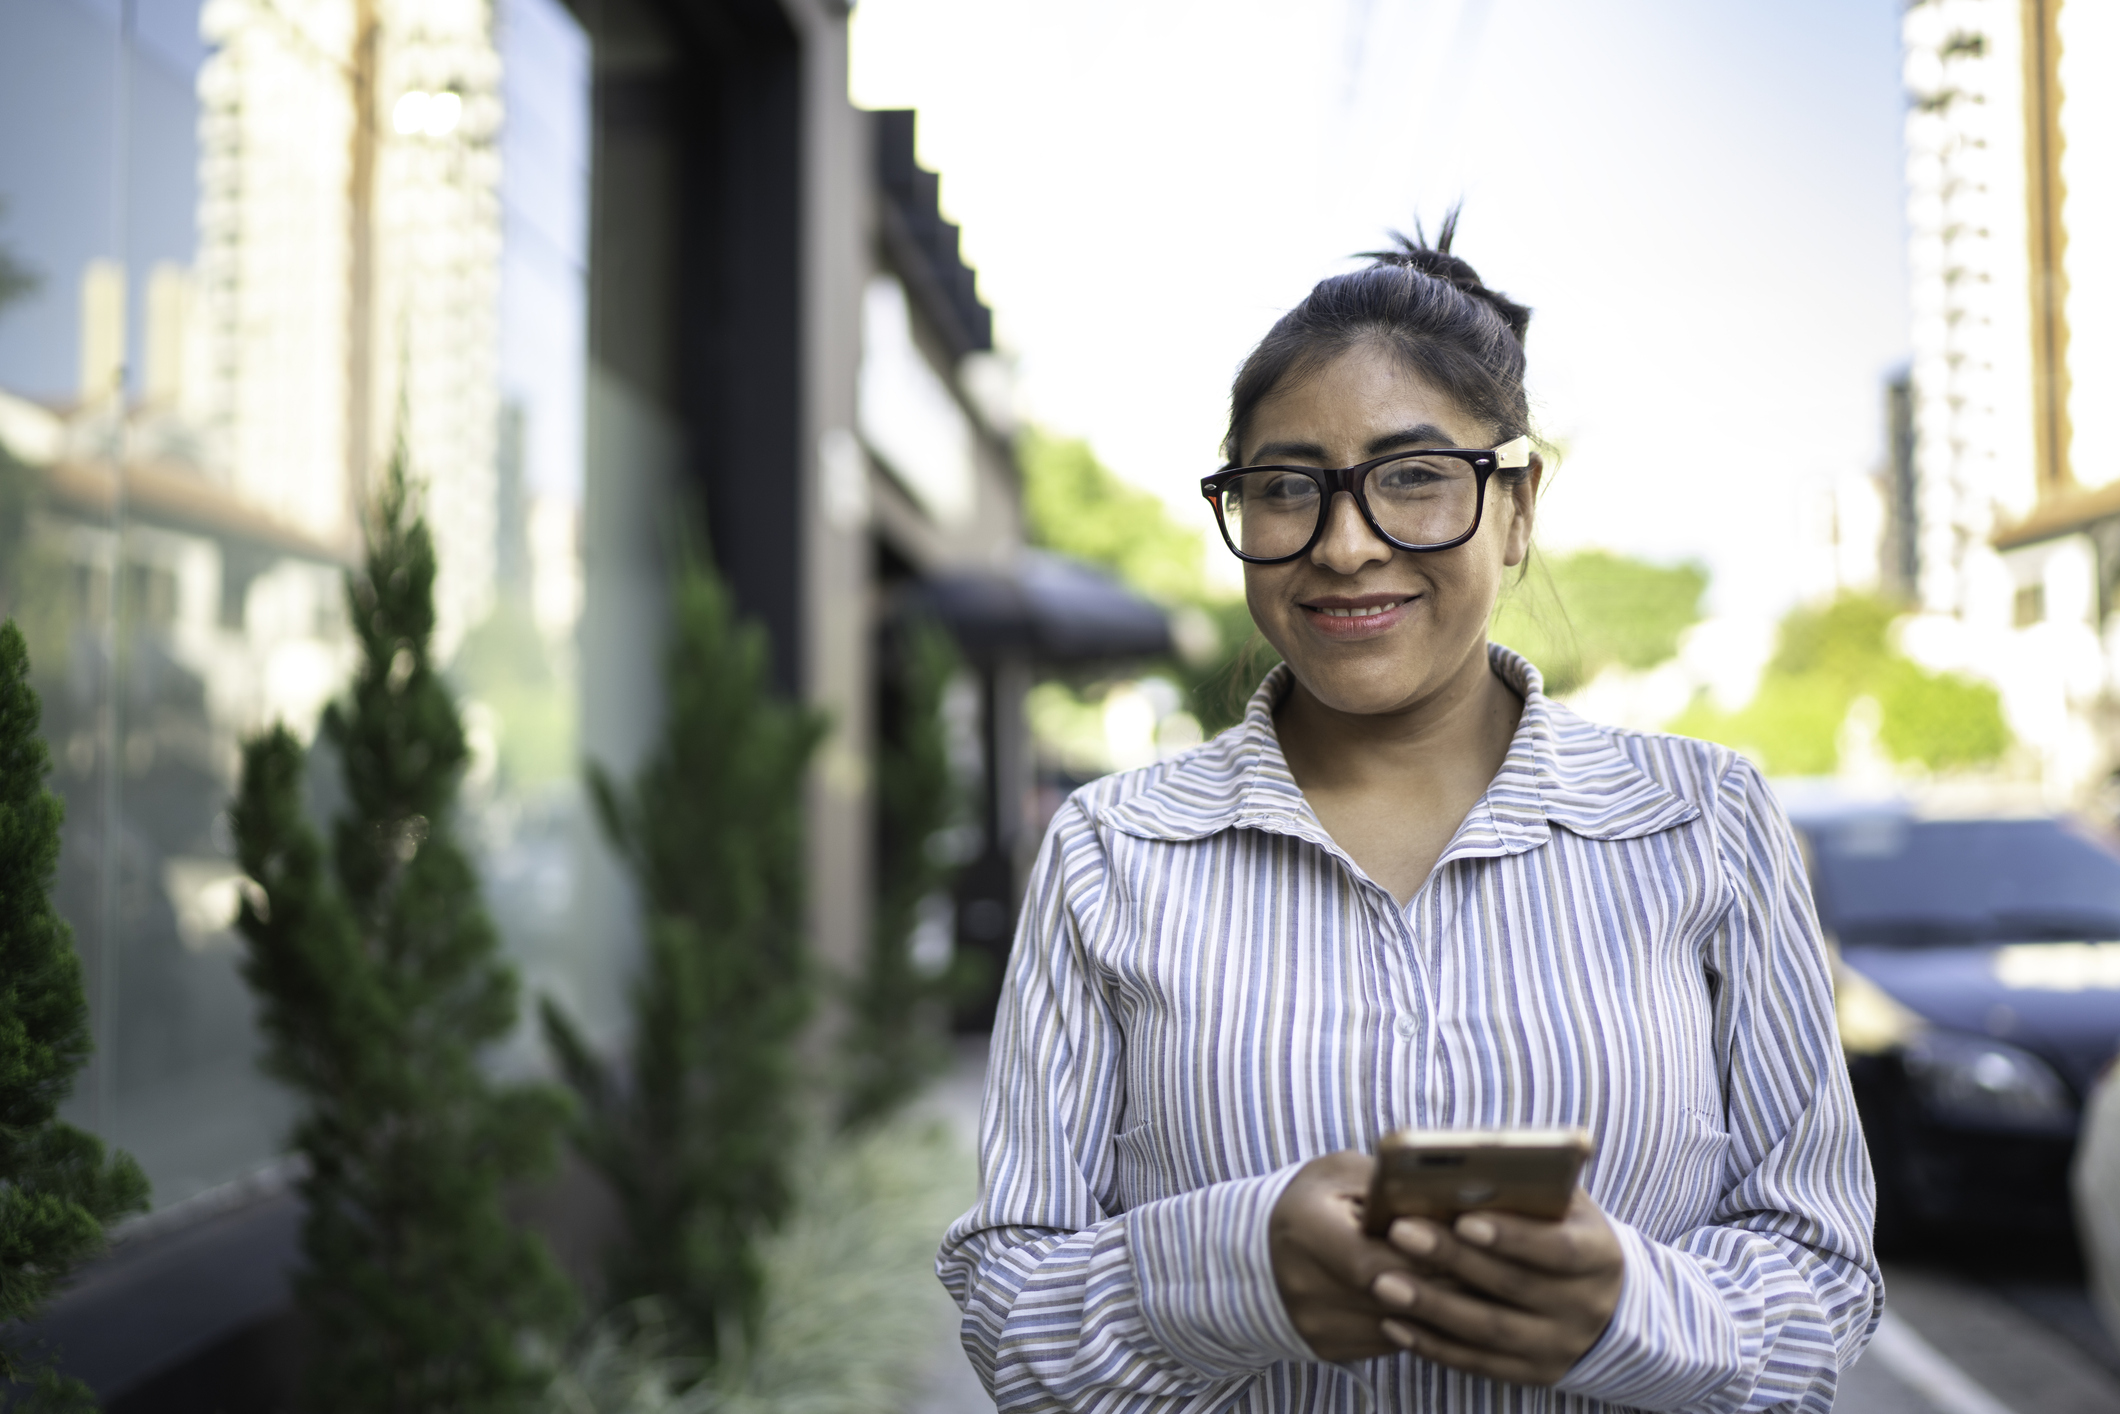 El porcentaje más alto de la región: 76% de los peruanos confía en las recomendaciones de buscadores y medios online al decidir sus compras por internet, según informe de Sherlock Communications